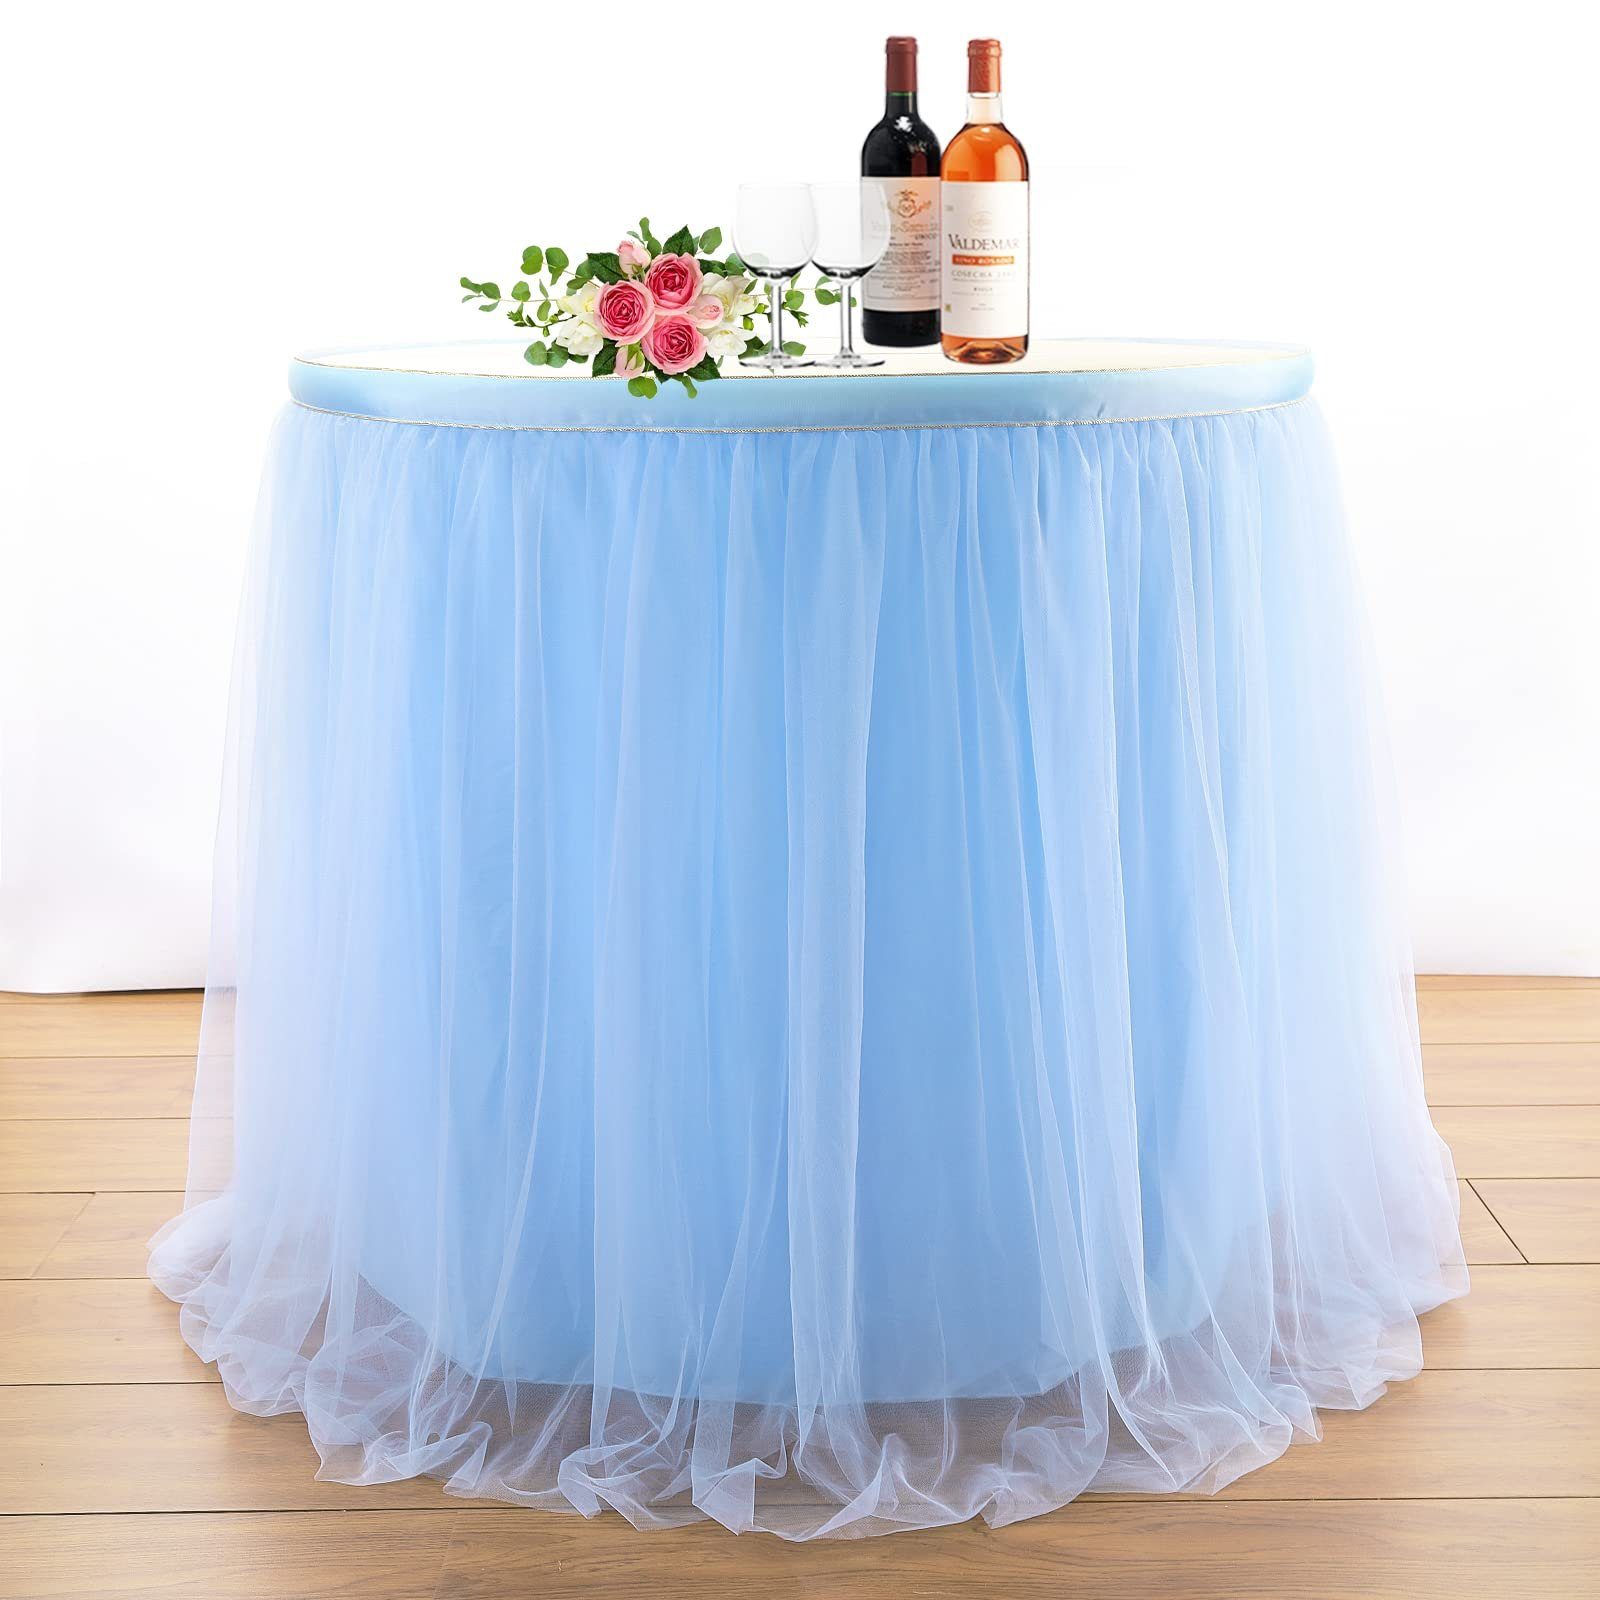 blau Babyparty, GelldG Taufe, für Hochzeitstische Tischdecke Tischröcke Tischdekoration,